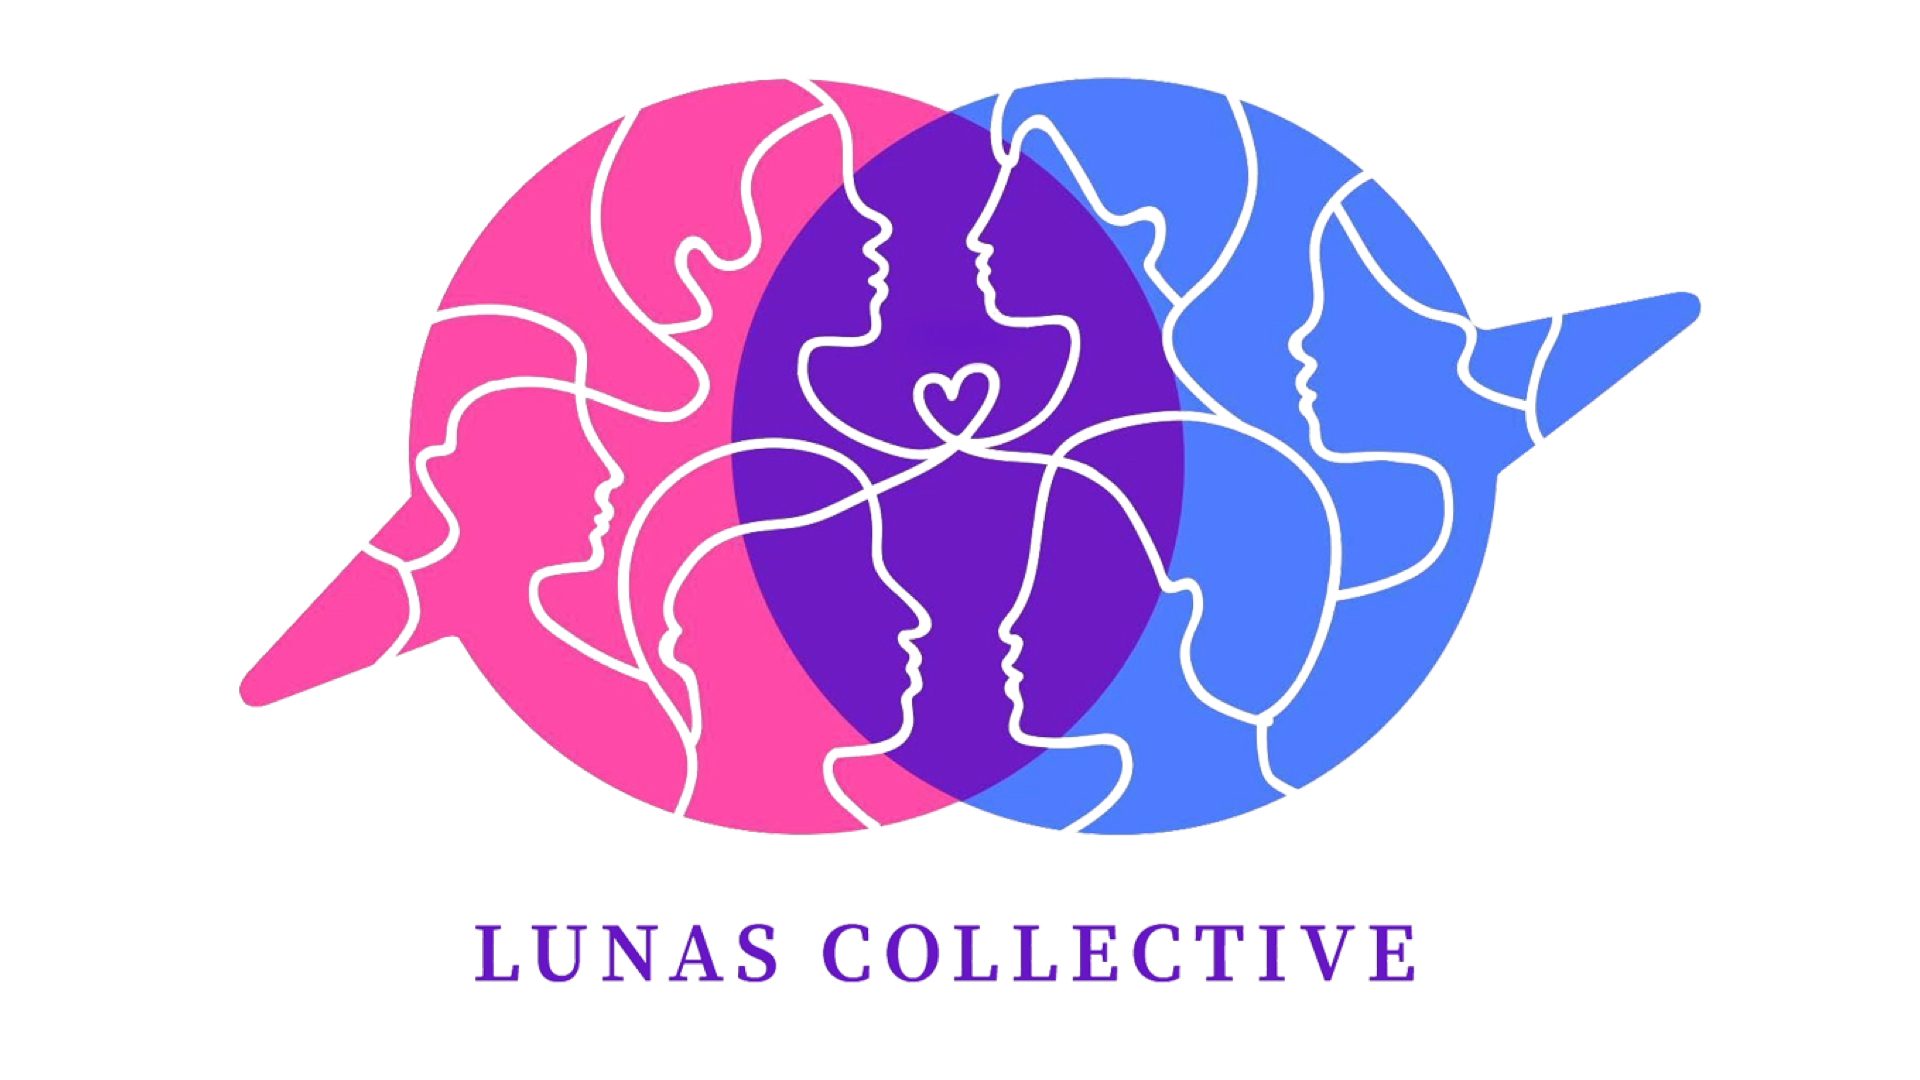 Lunas Collective